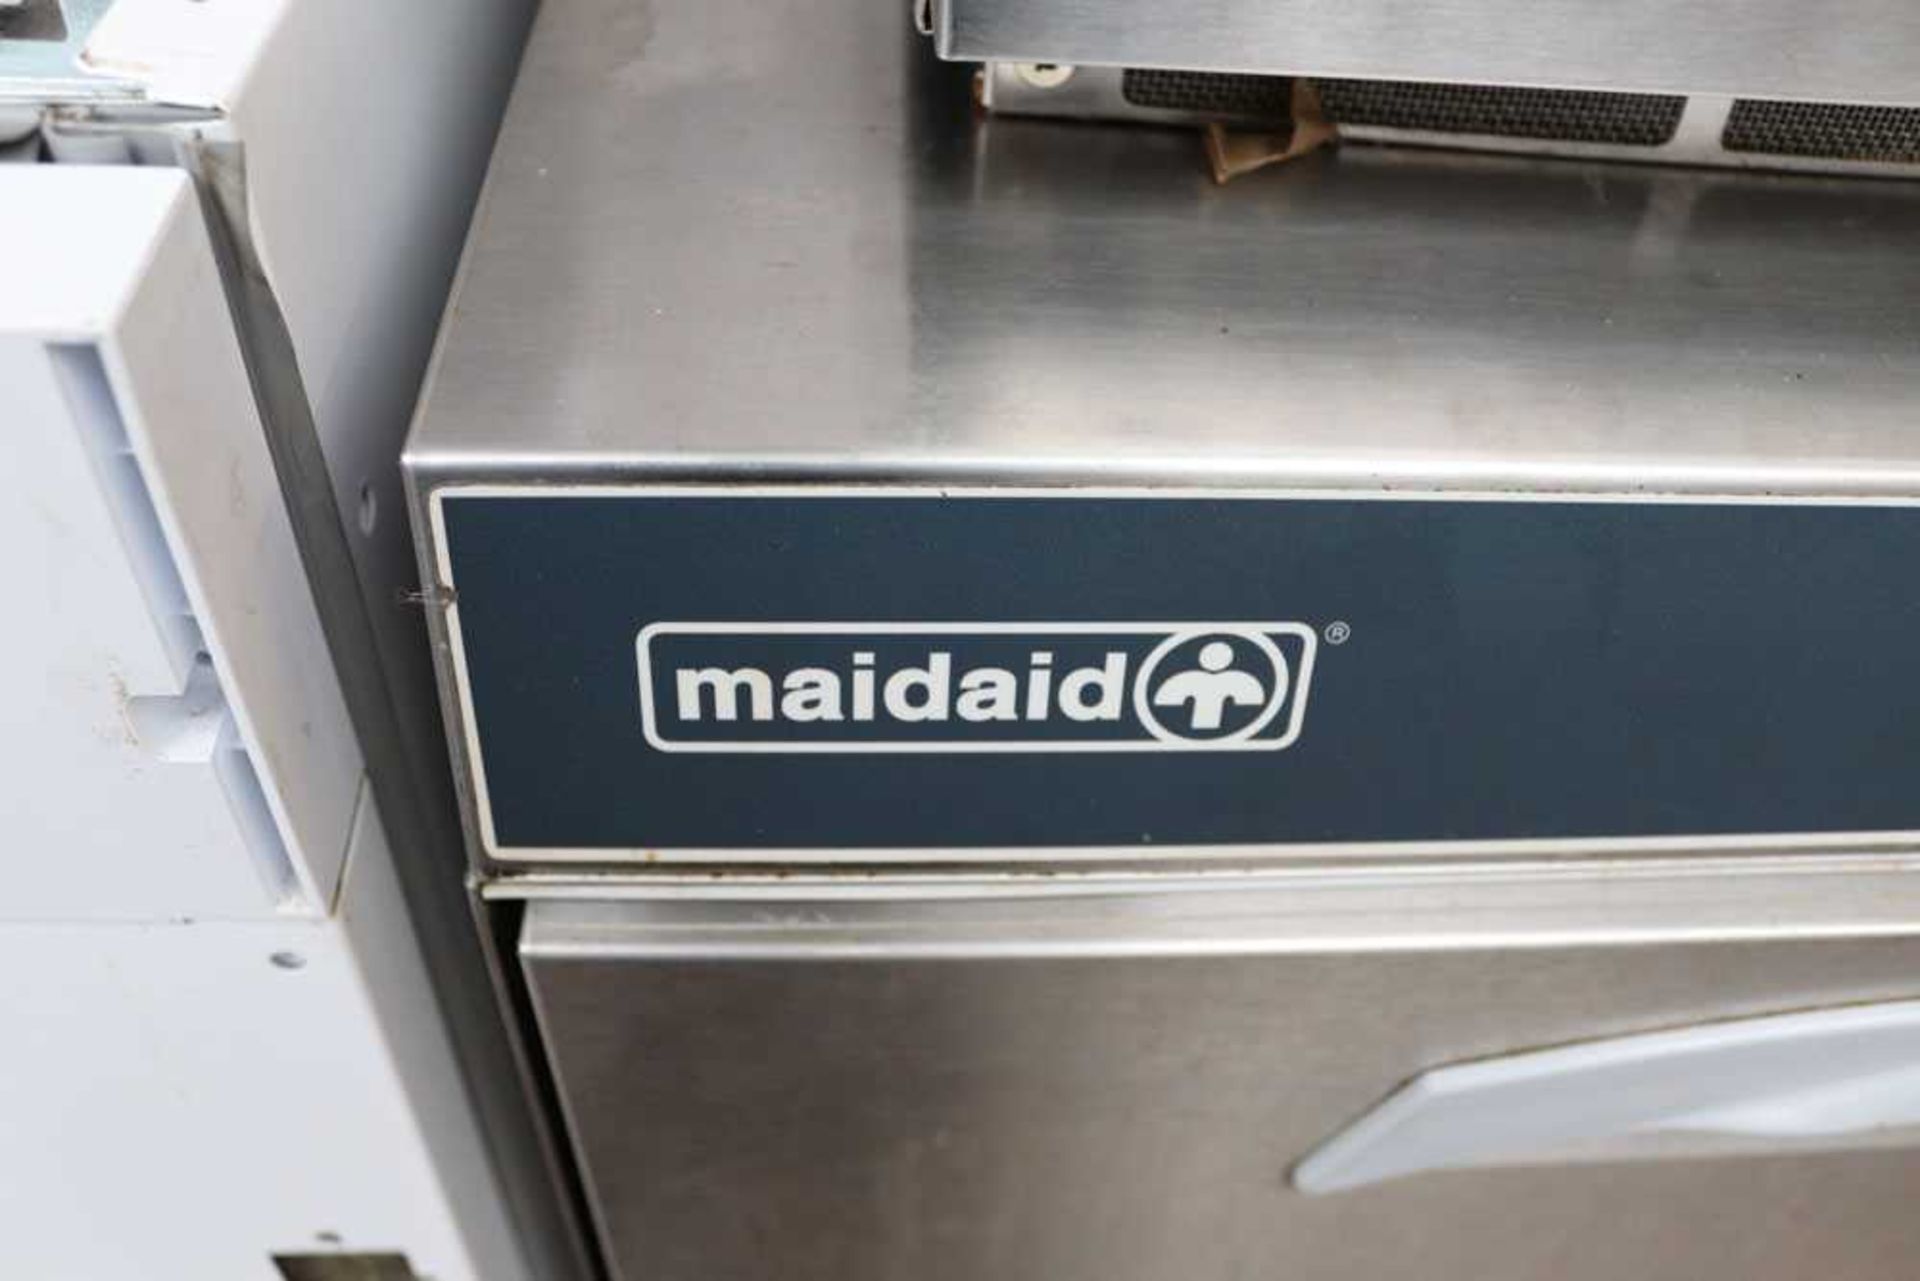 57cm MaidAid model C515 under counter dishwasher - Image 3 of 3